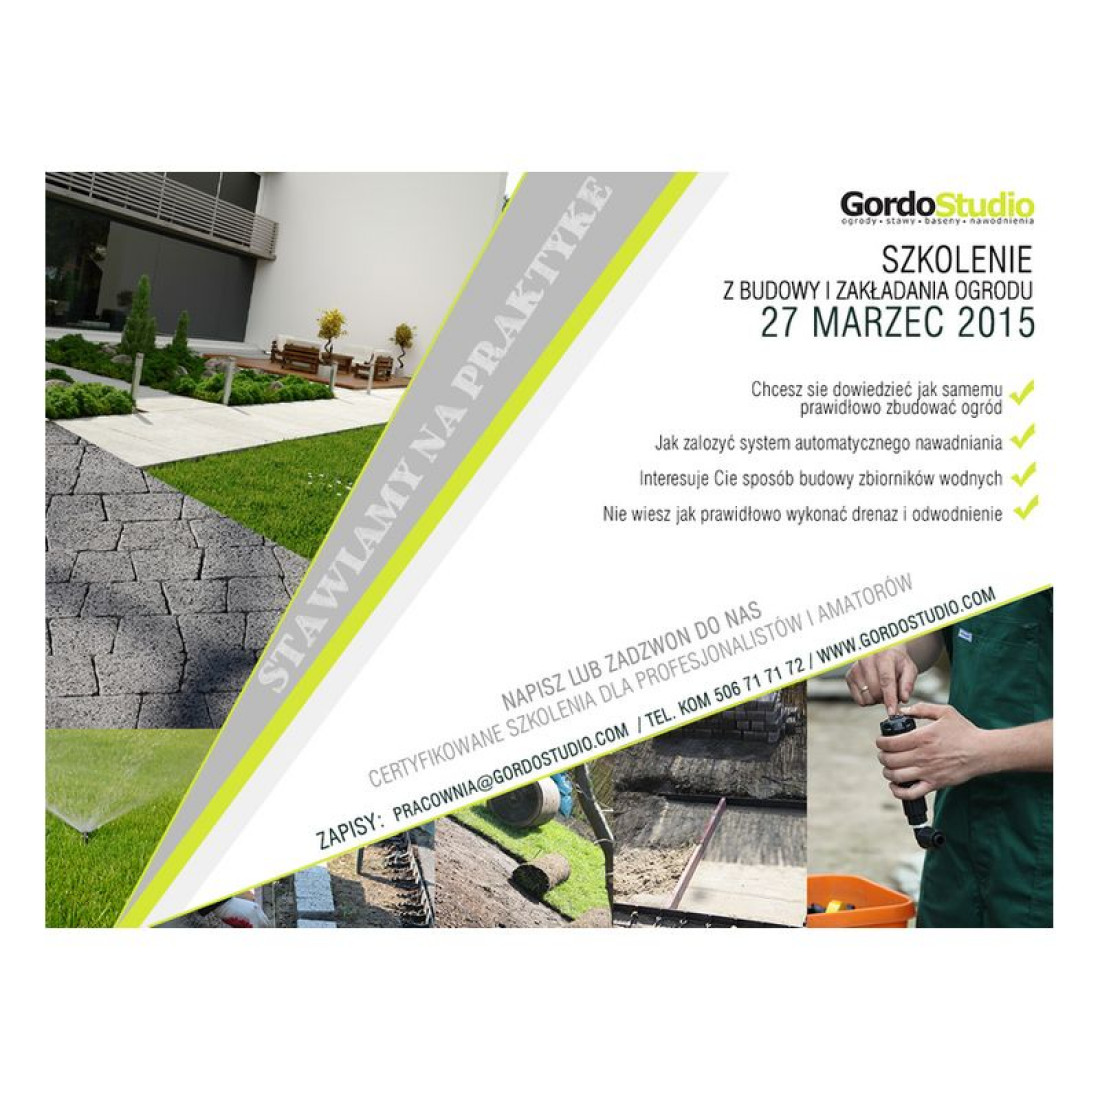 Gordo Studio zaprasza na szkolenie z budowy i zakładania ogrodu 27 marzec 2015